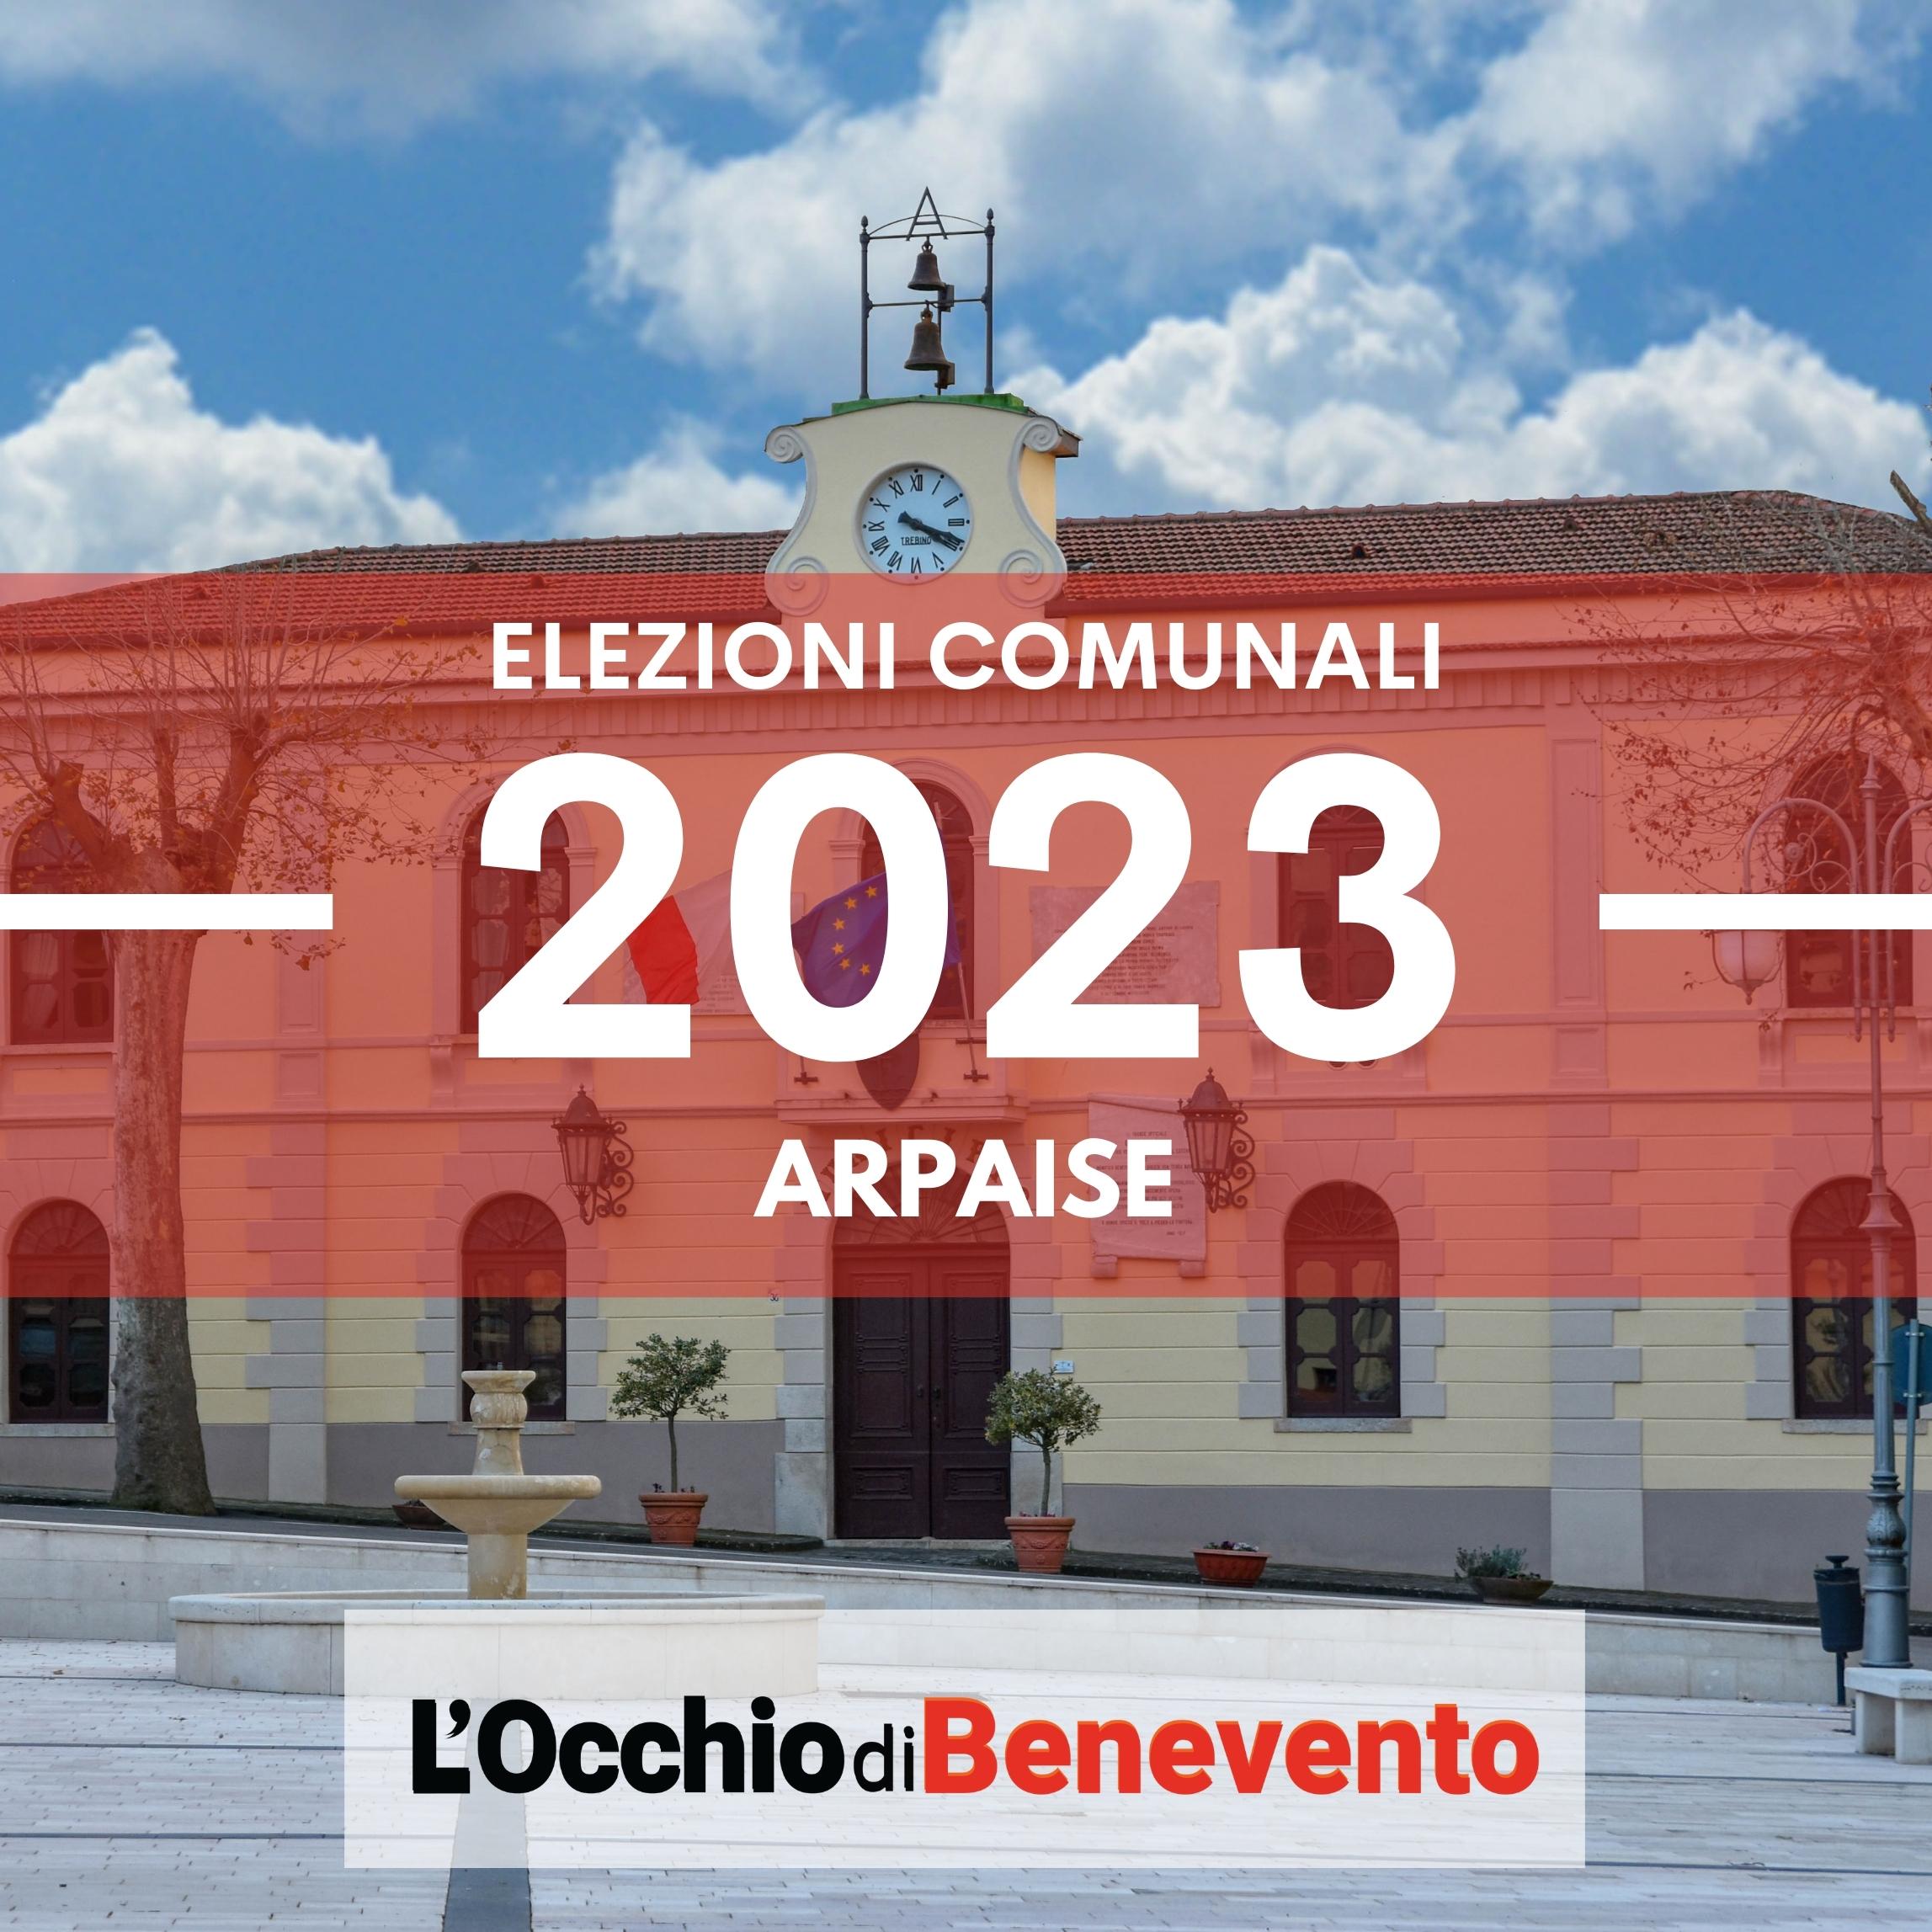 Elezioni comunali 2023 Arpaise liste candidati